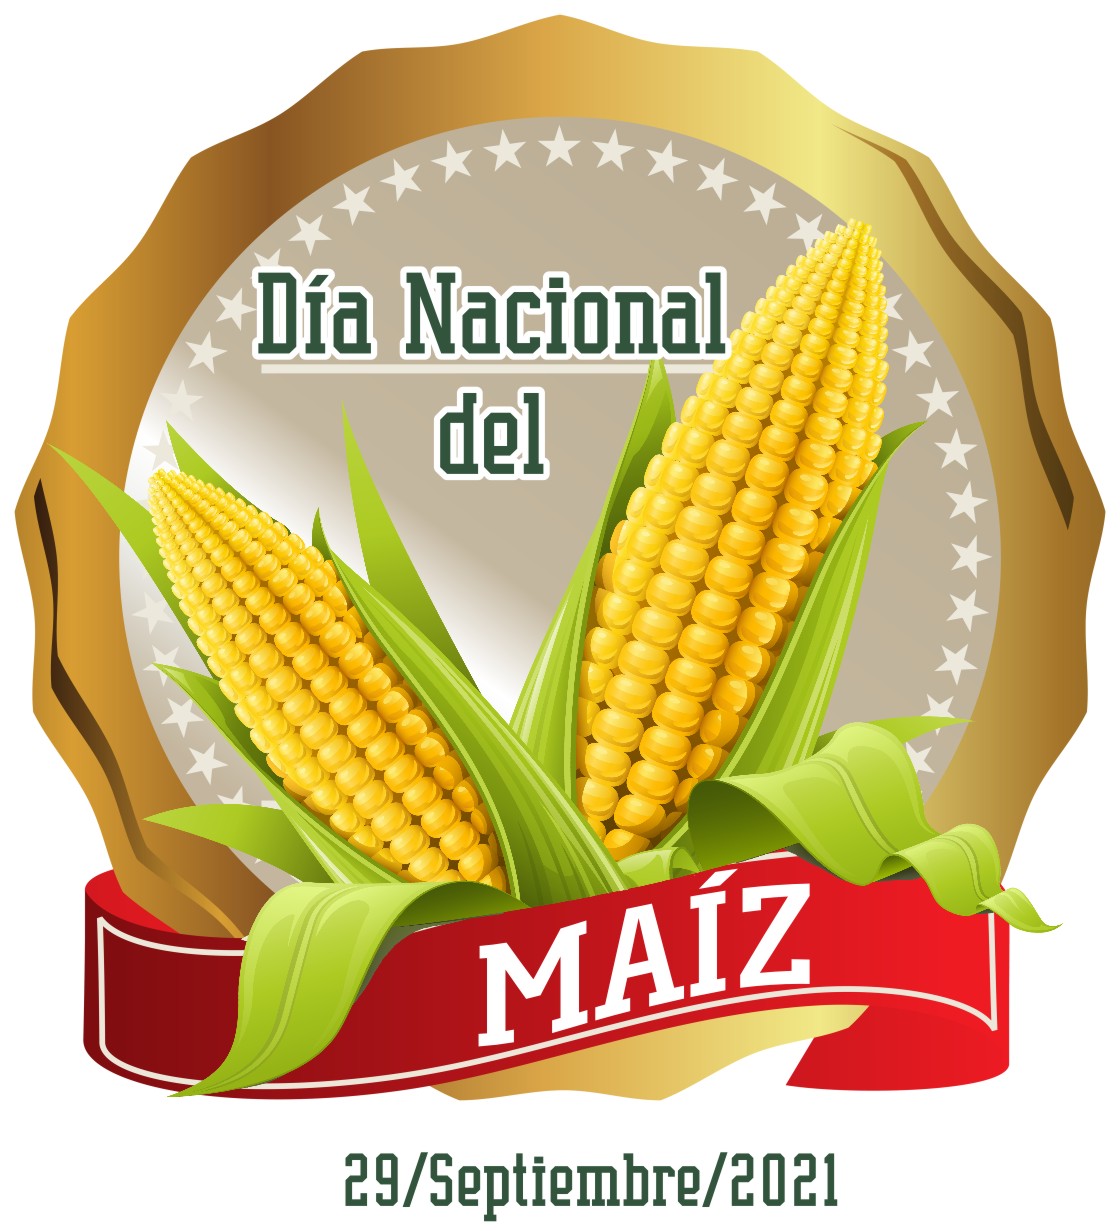 (Español) Para conmemorar el Día Nacional del Maíz